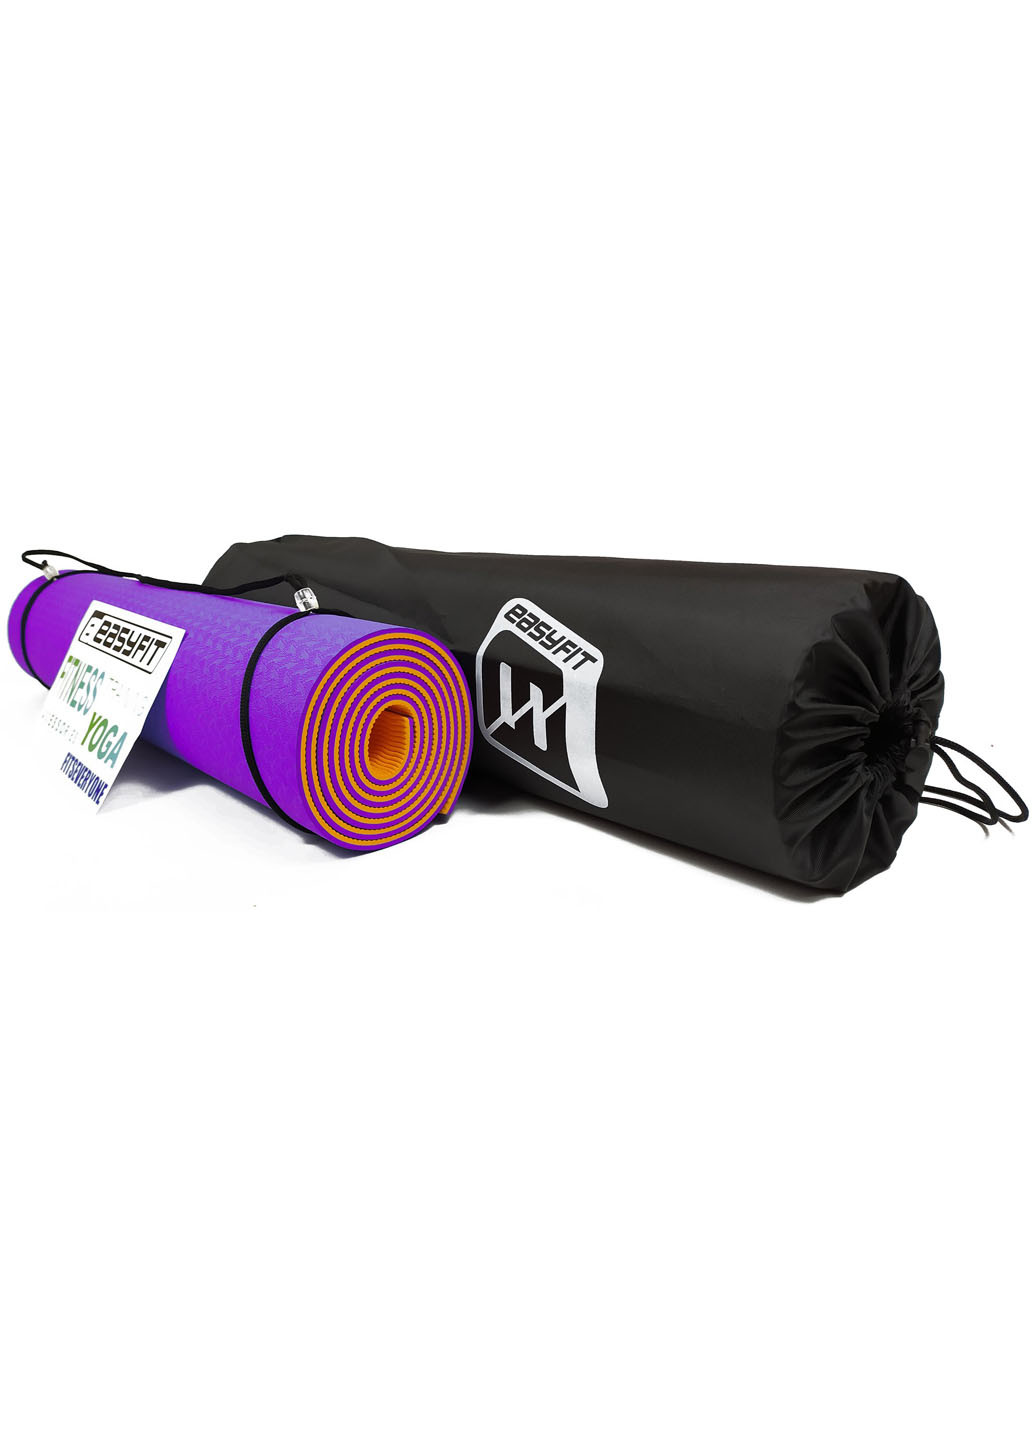 Коврик для йоги TPE+TC ECO-Friendly 6 мм фиолетовый с оранжевым (мат-каремат спортивный, йогамат для фитнеса, пилатеса) EasyFit (237596256)